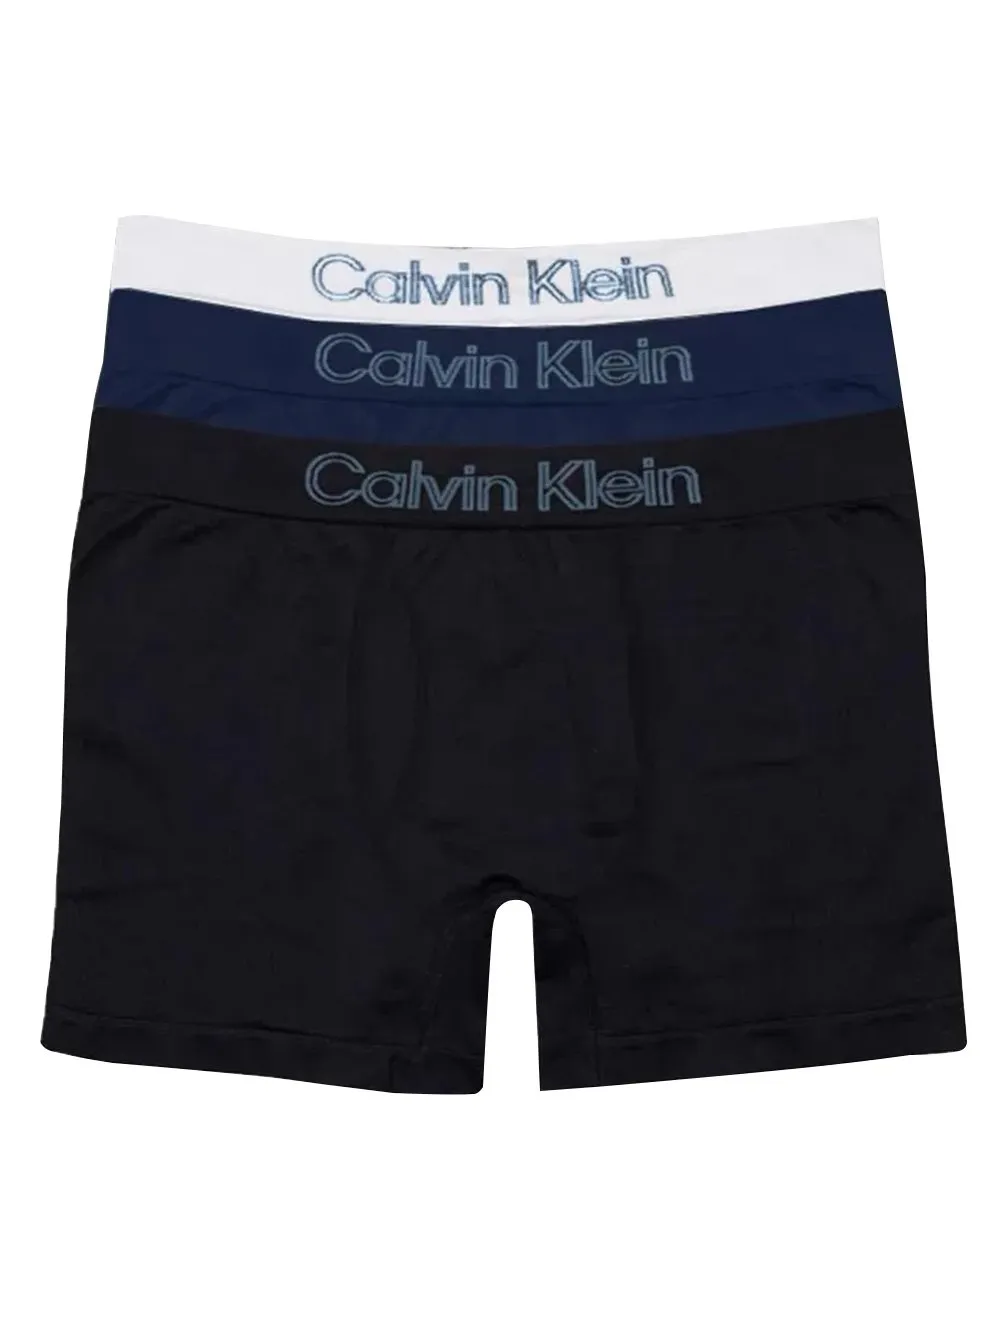 Cuecas Calvin Klein Trunk Seamless Outline Logo Azul Escuro Preto e Branco  Pack 3UN